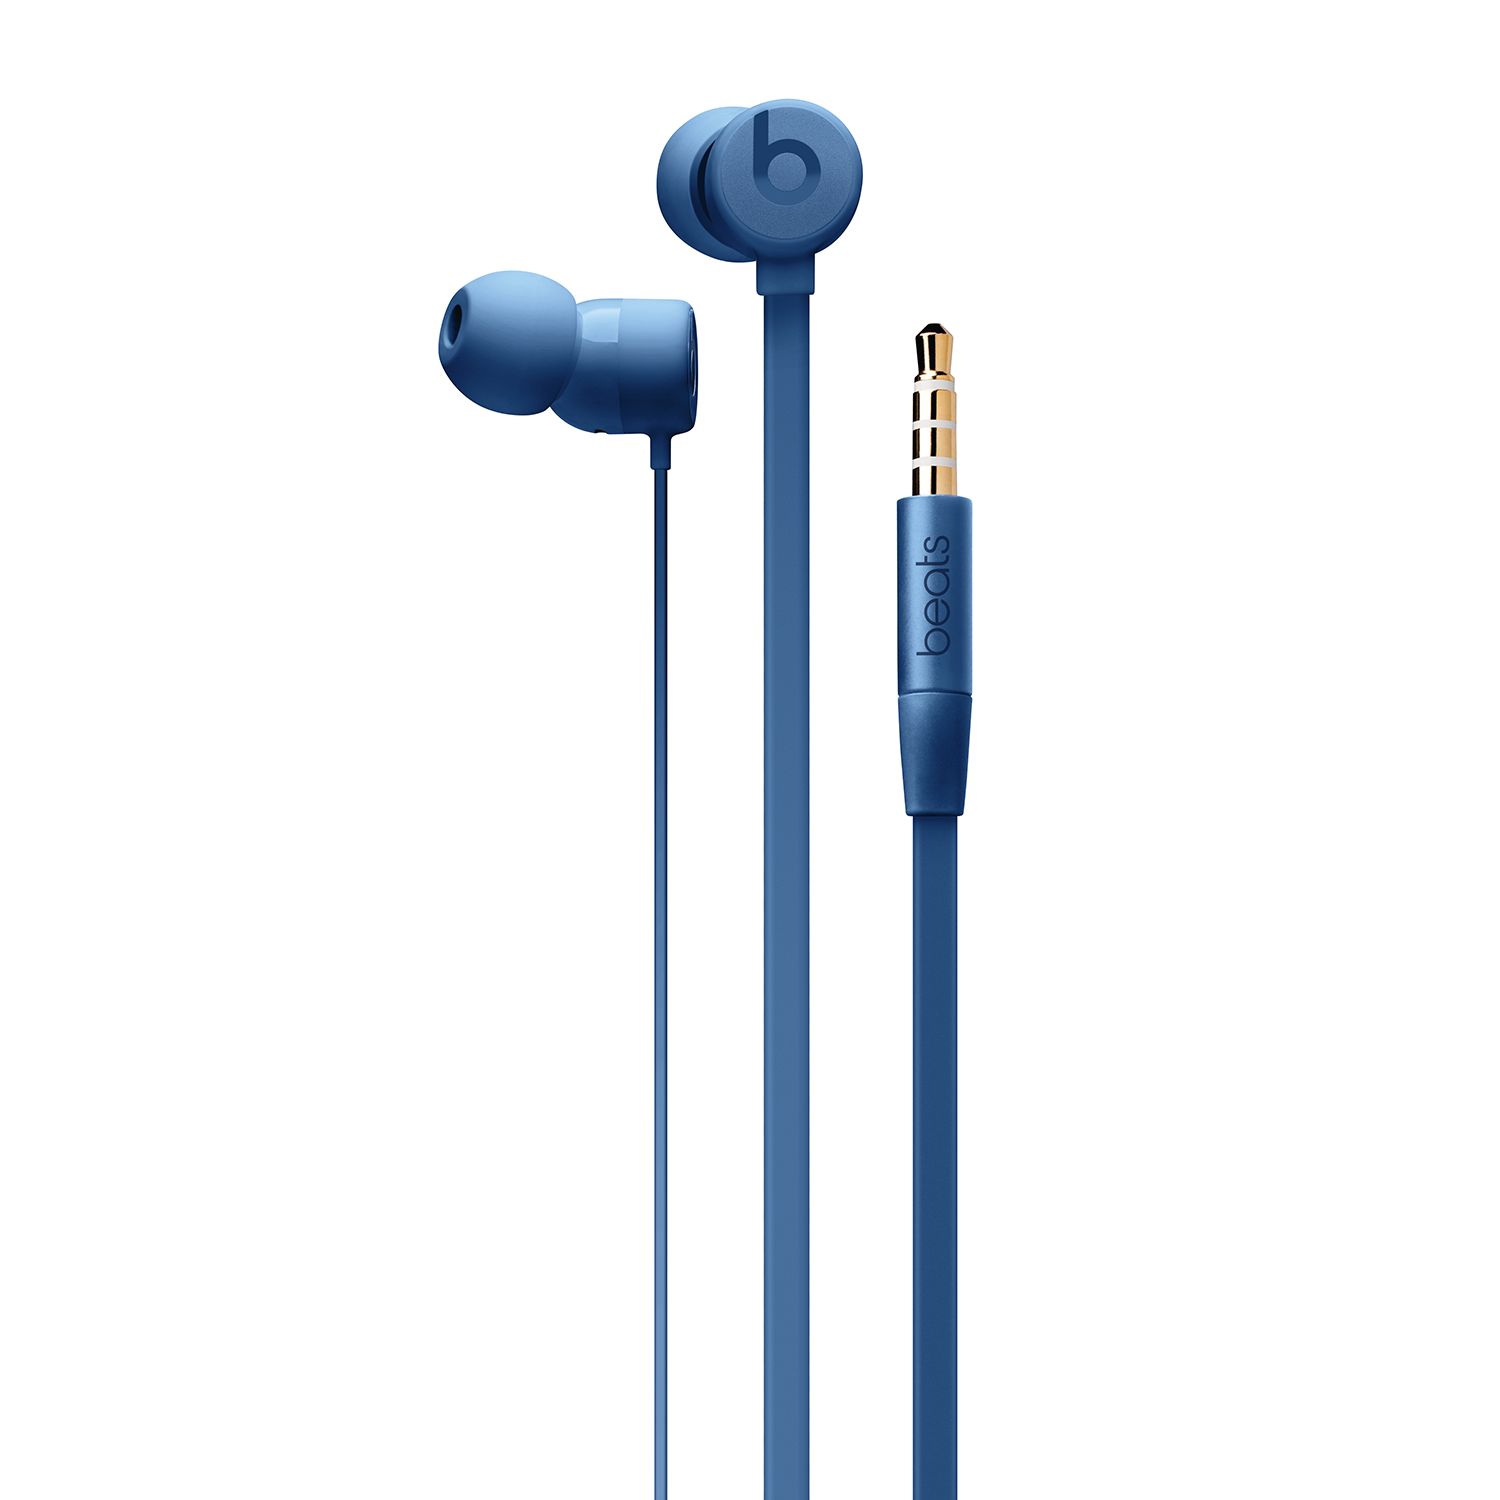 urbeats3 wired earphones